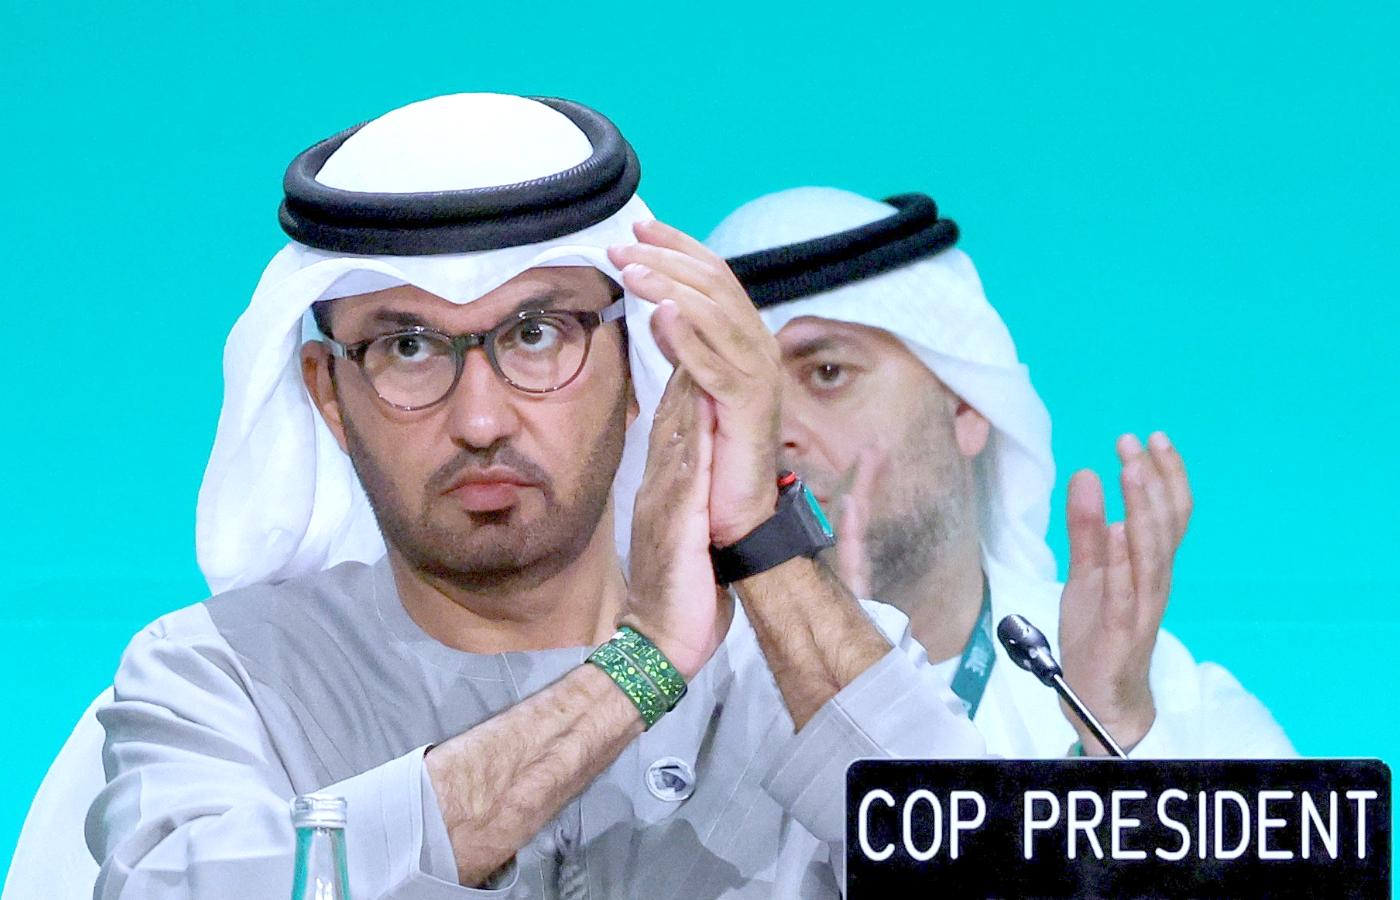 Przewodniczący COP28 sułtan Ahmed Al Jaber po ogłoszeniu porozumienia